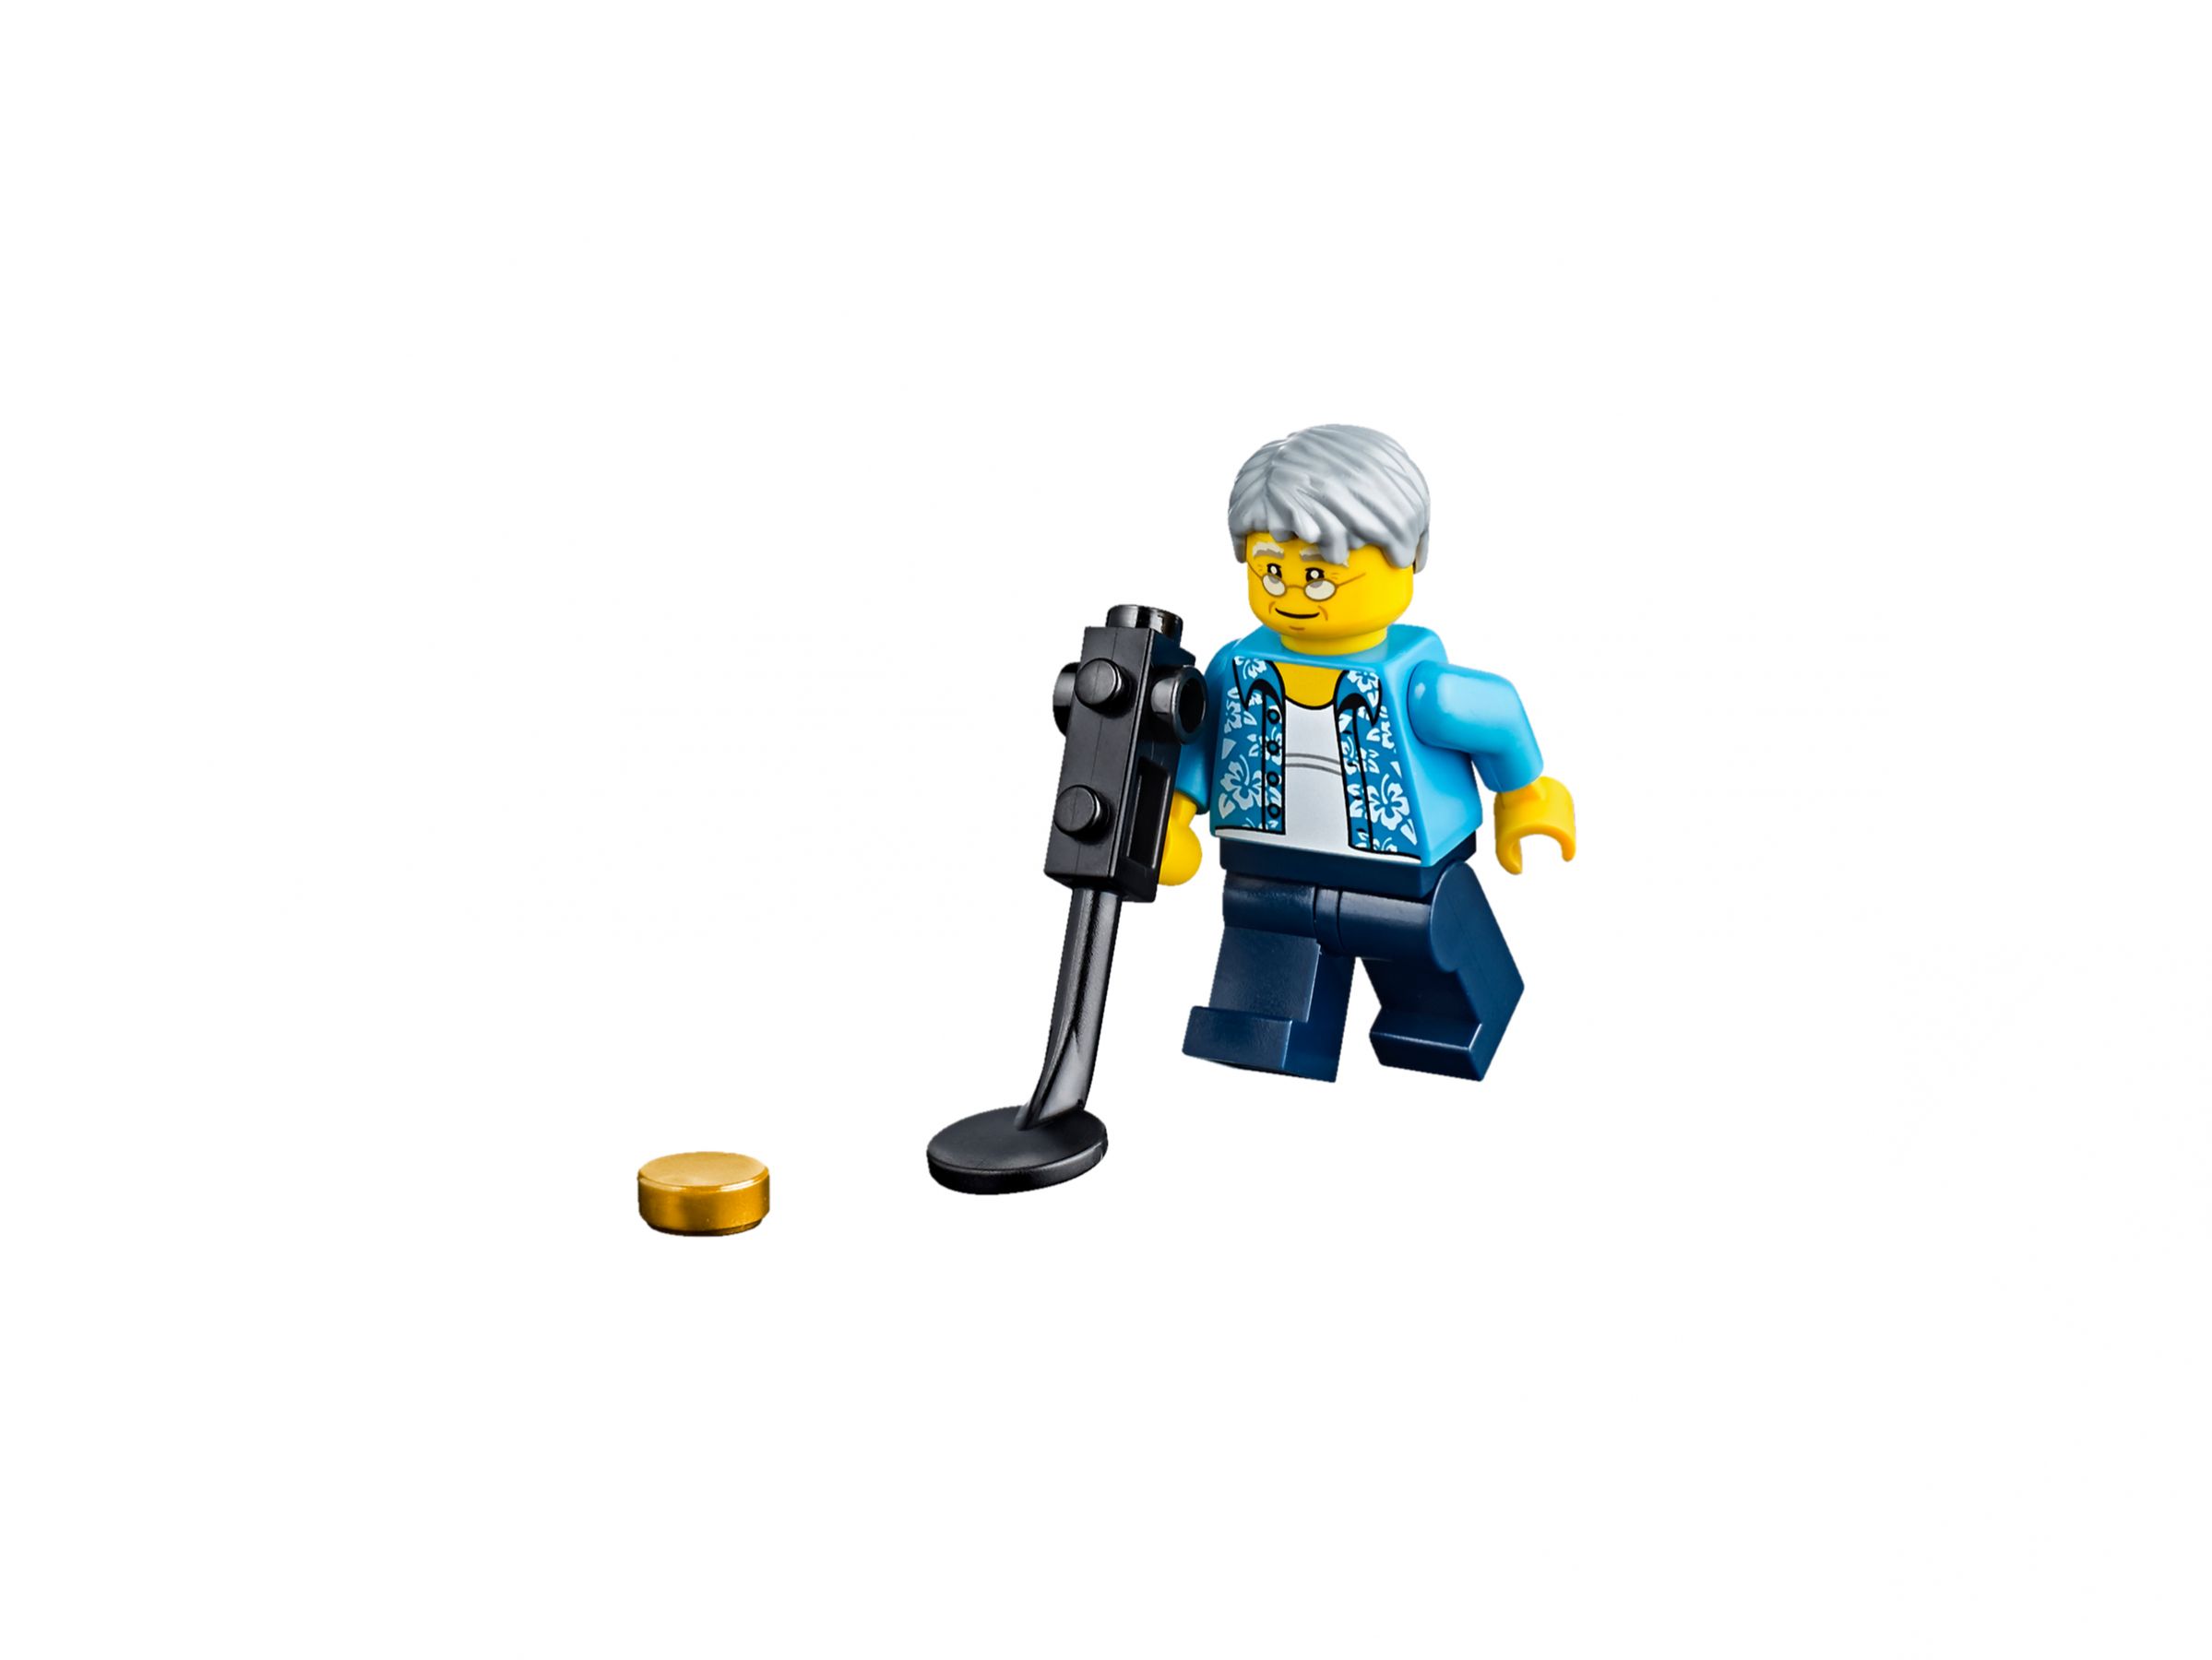 LEGO City 60153 Stadtbewohner – Ein Tag am Strand LEGO_60153_alt2.jpg